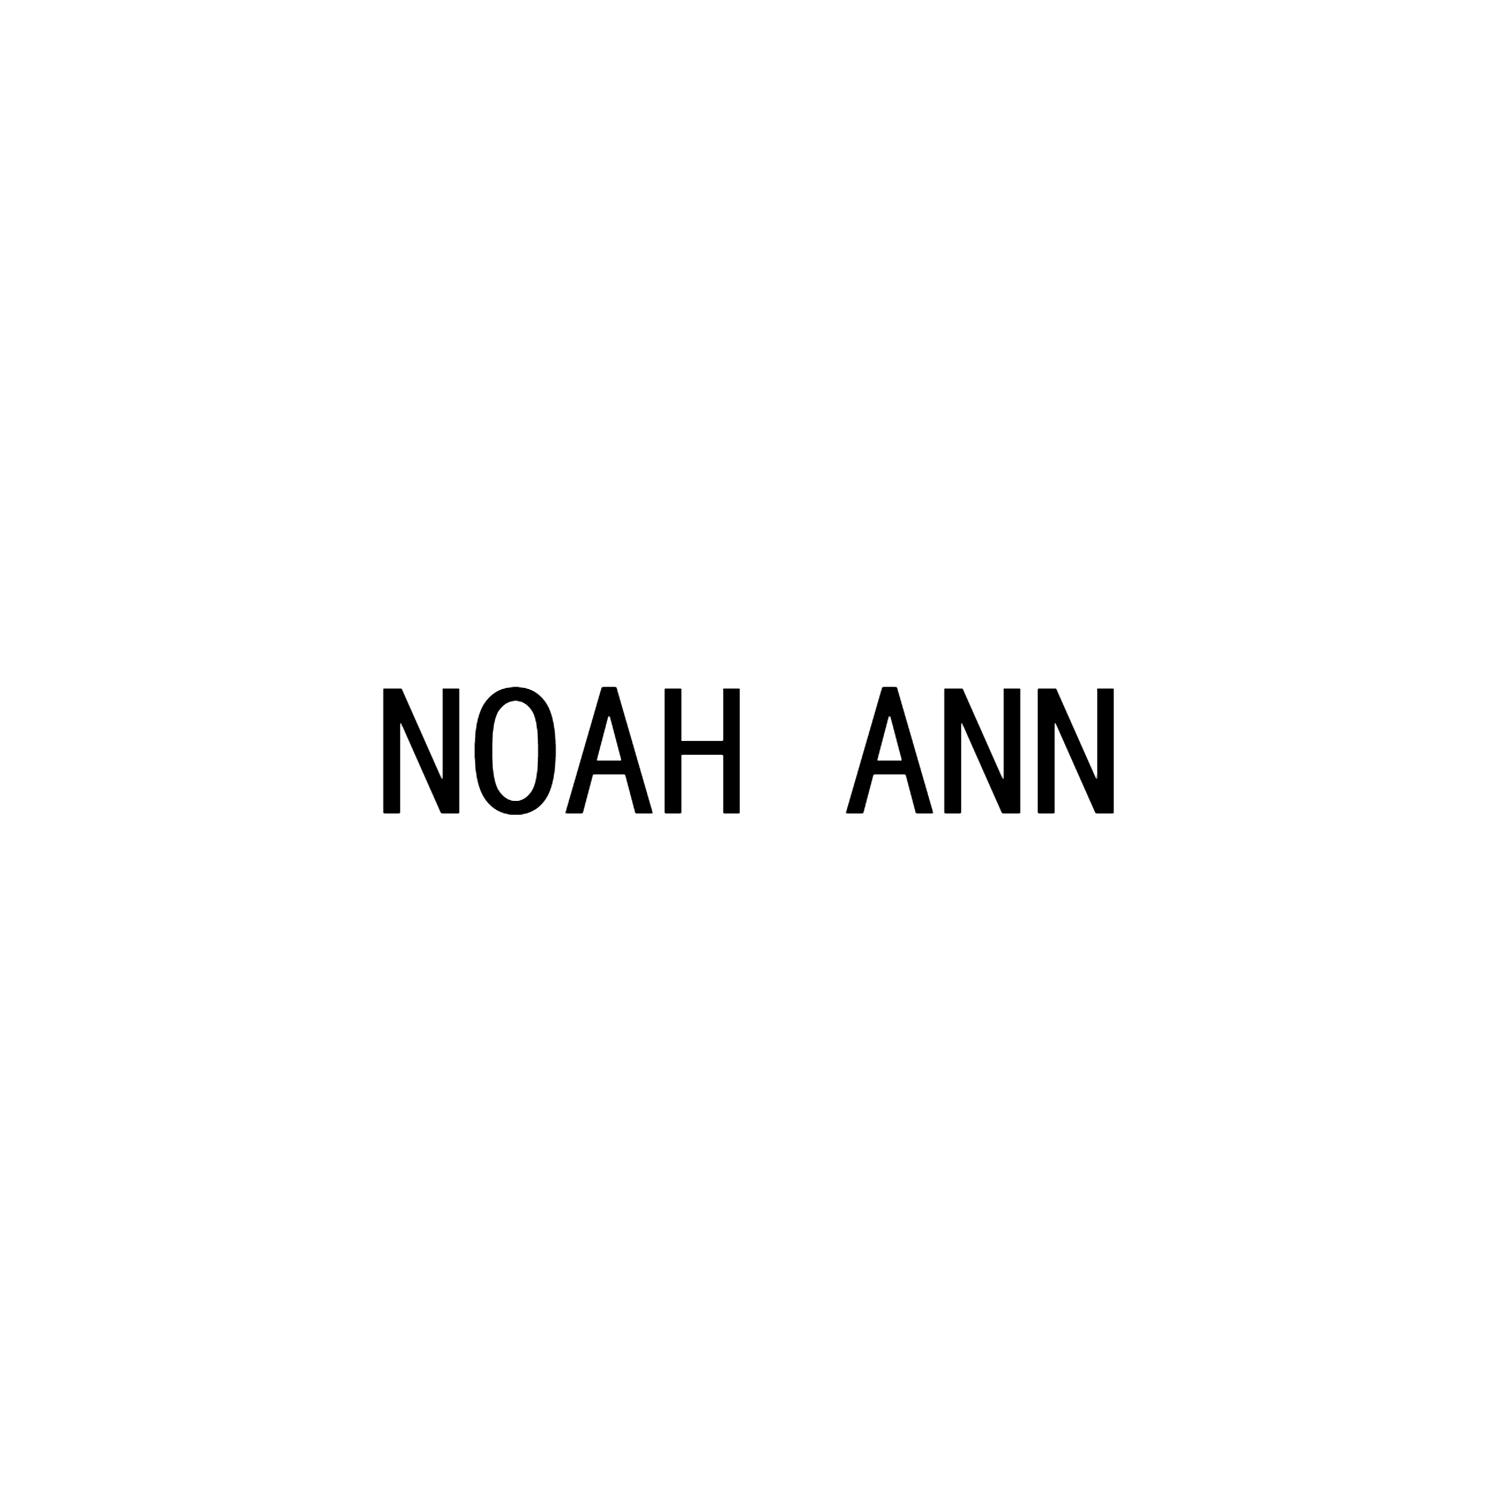 NOAH ANN